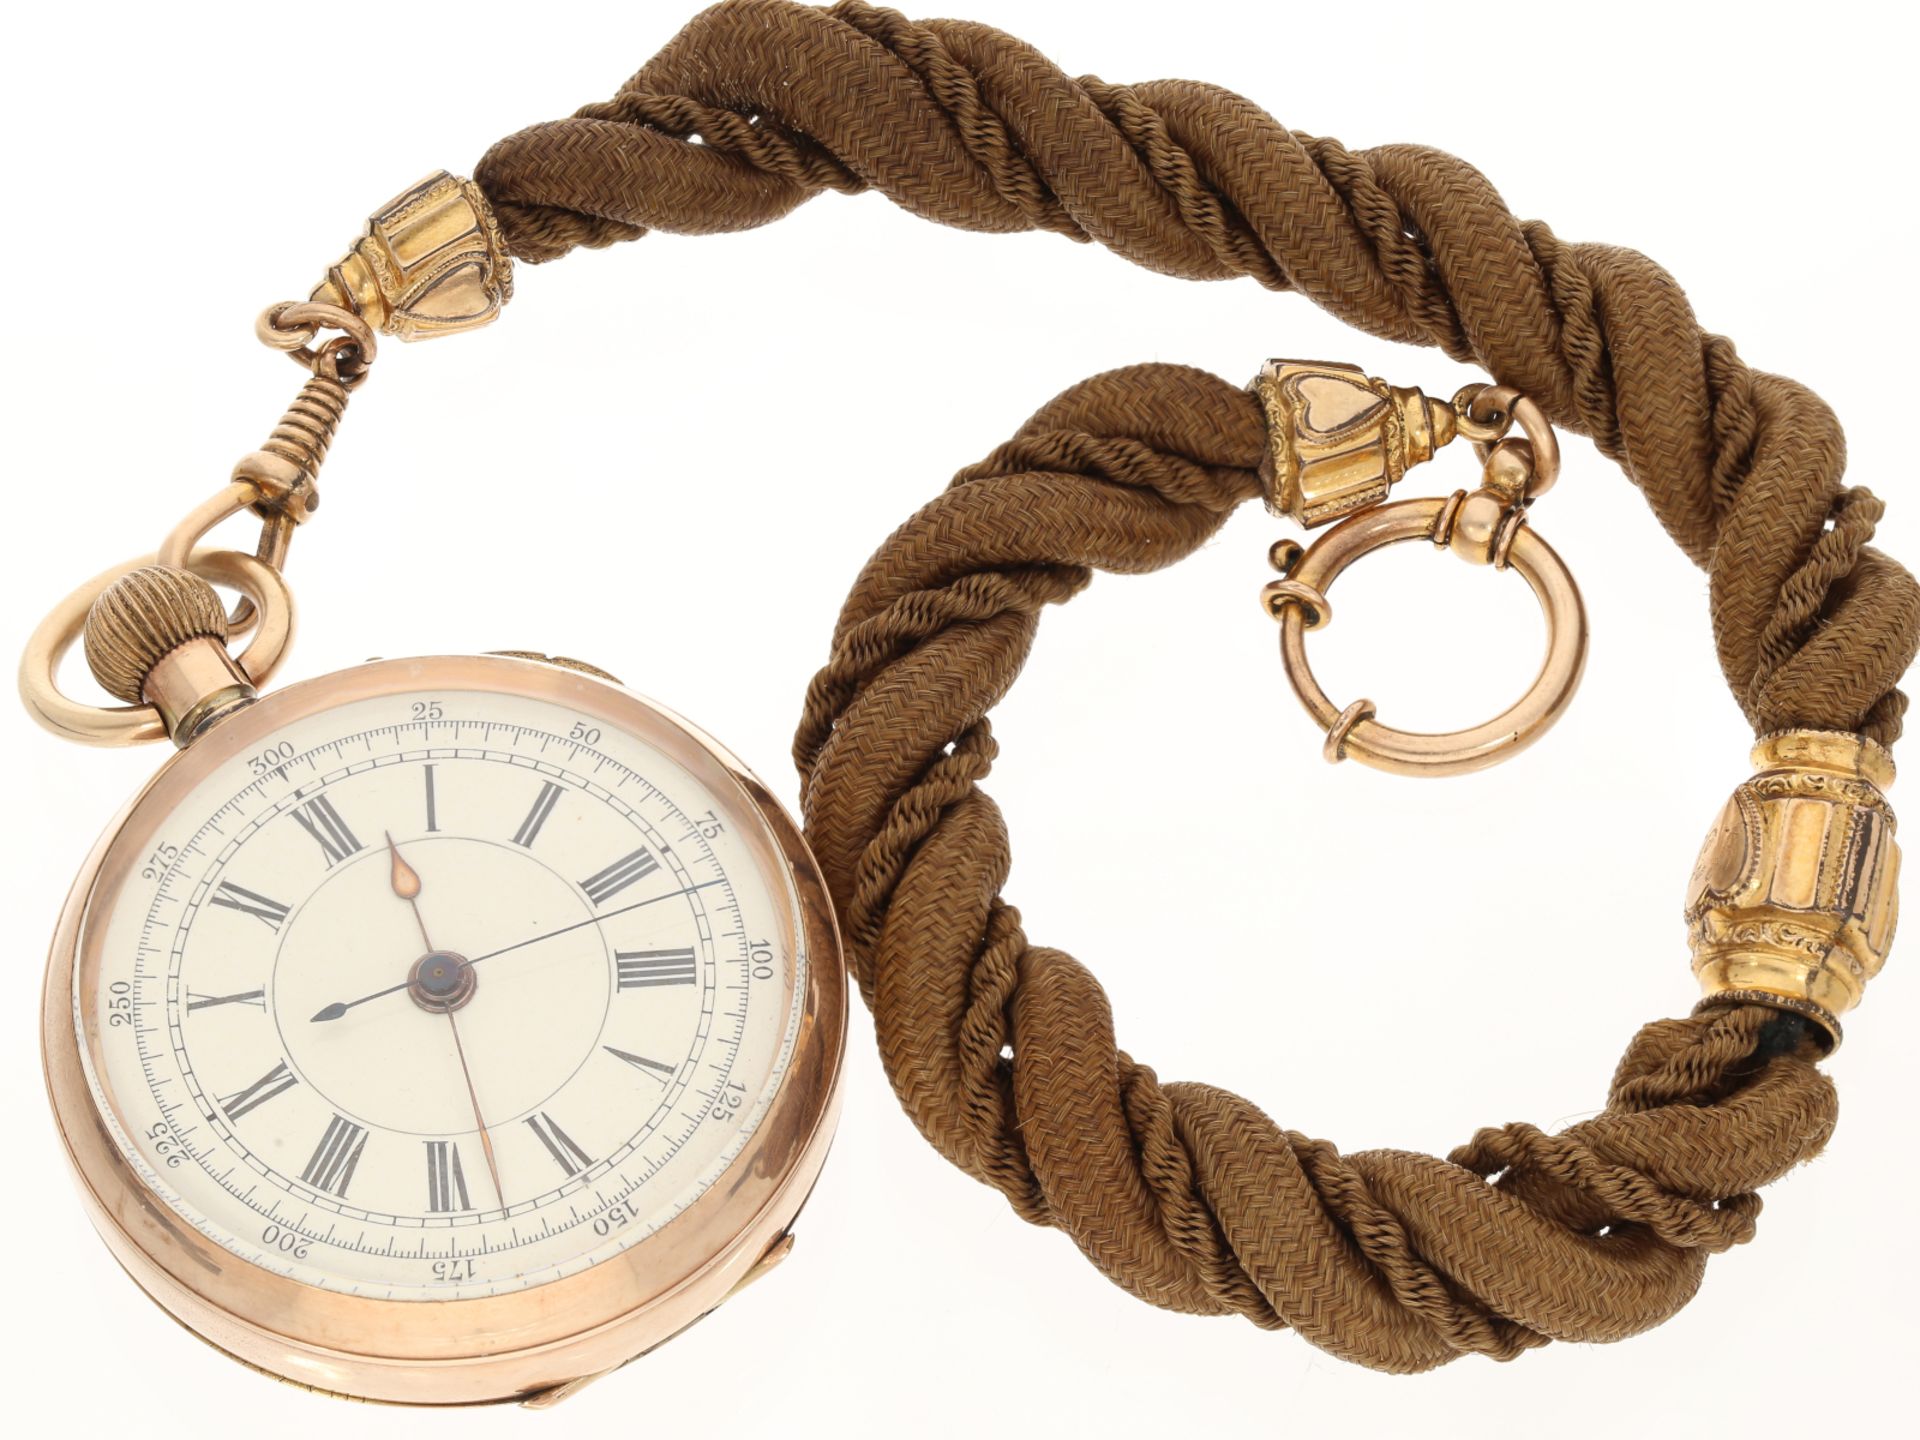 Taschenuhr: Englische 9K Gold Doctor's watch mit ausgefallener vergoldeter Uhrenkette, ca. 1880